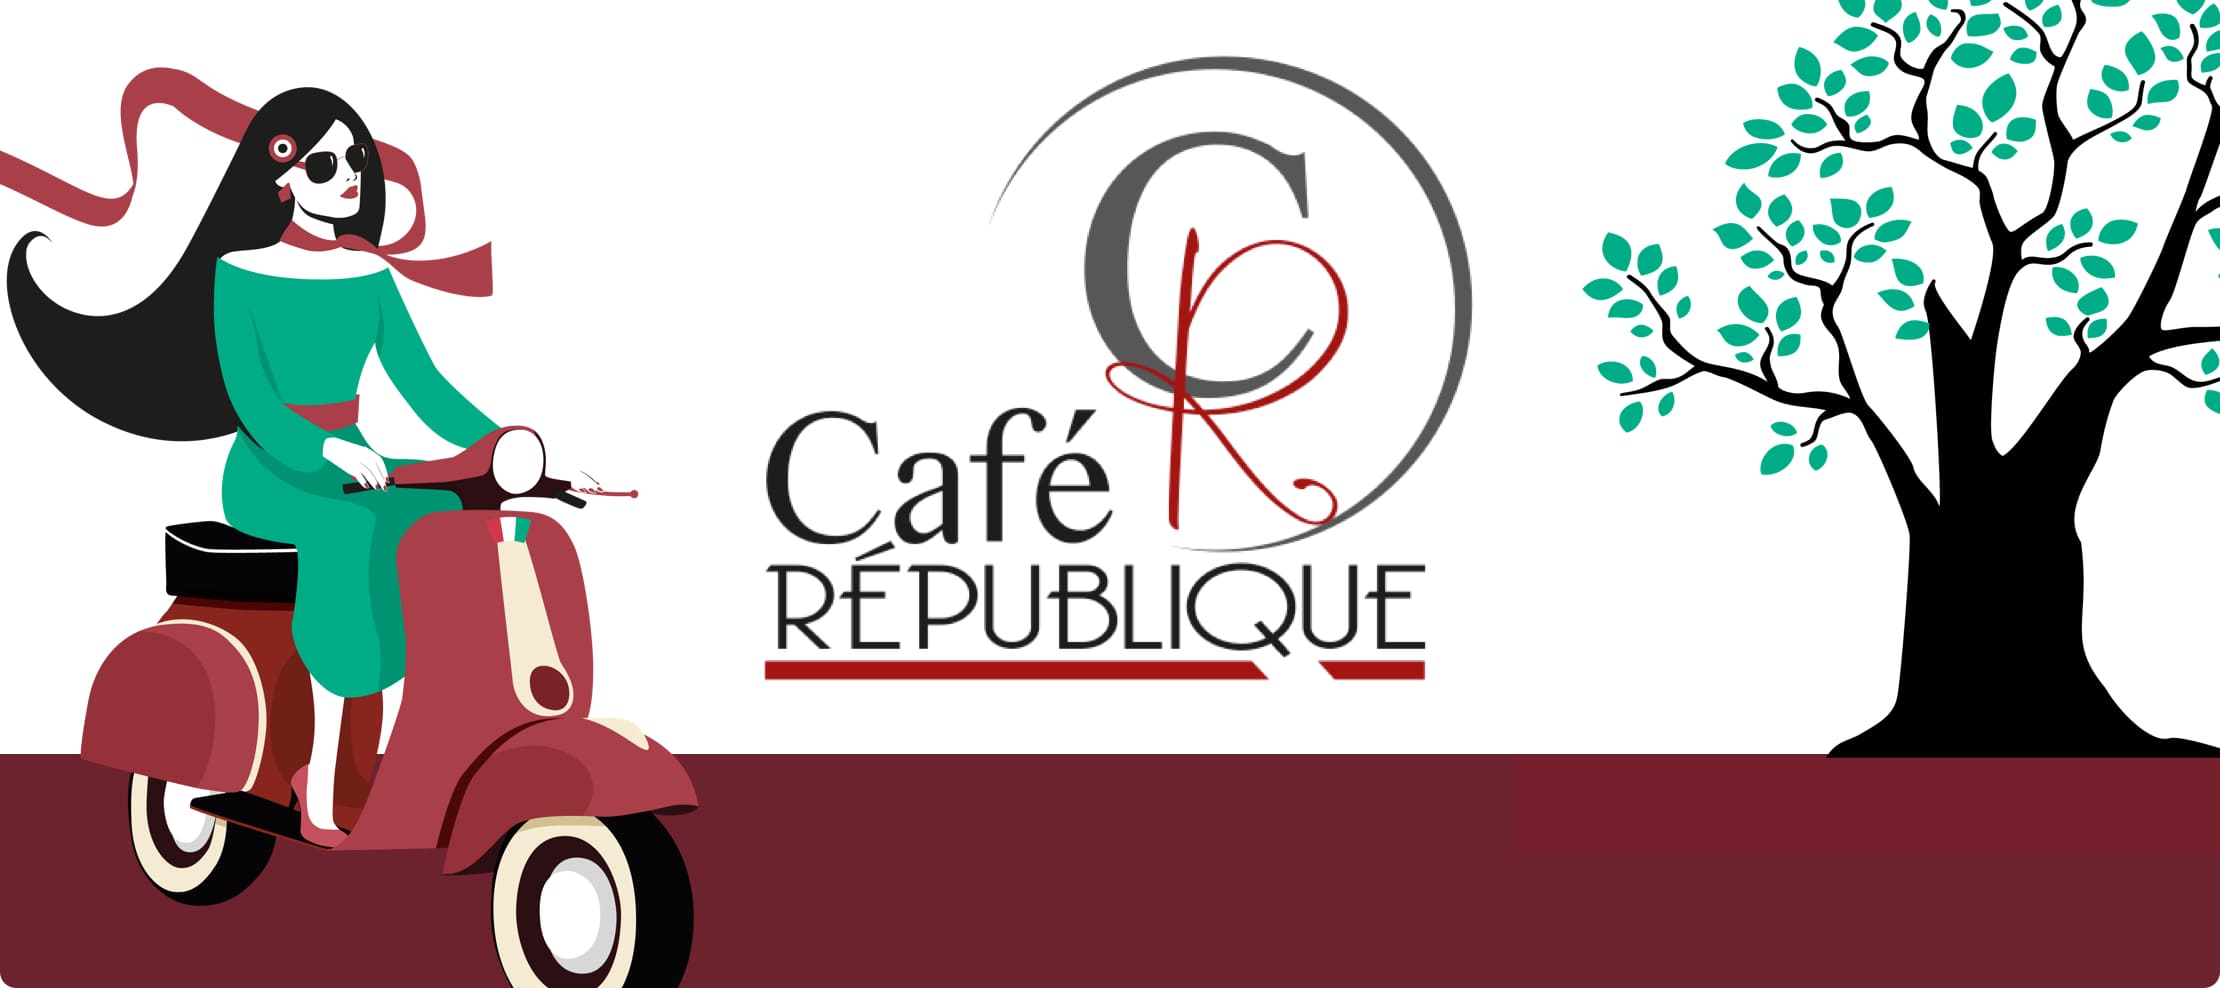 Café république illustration graphitéine Limoges